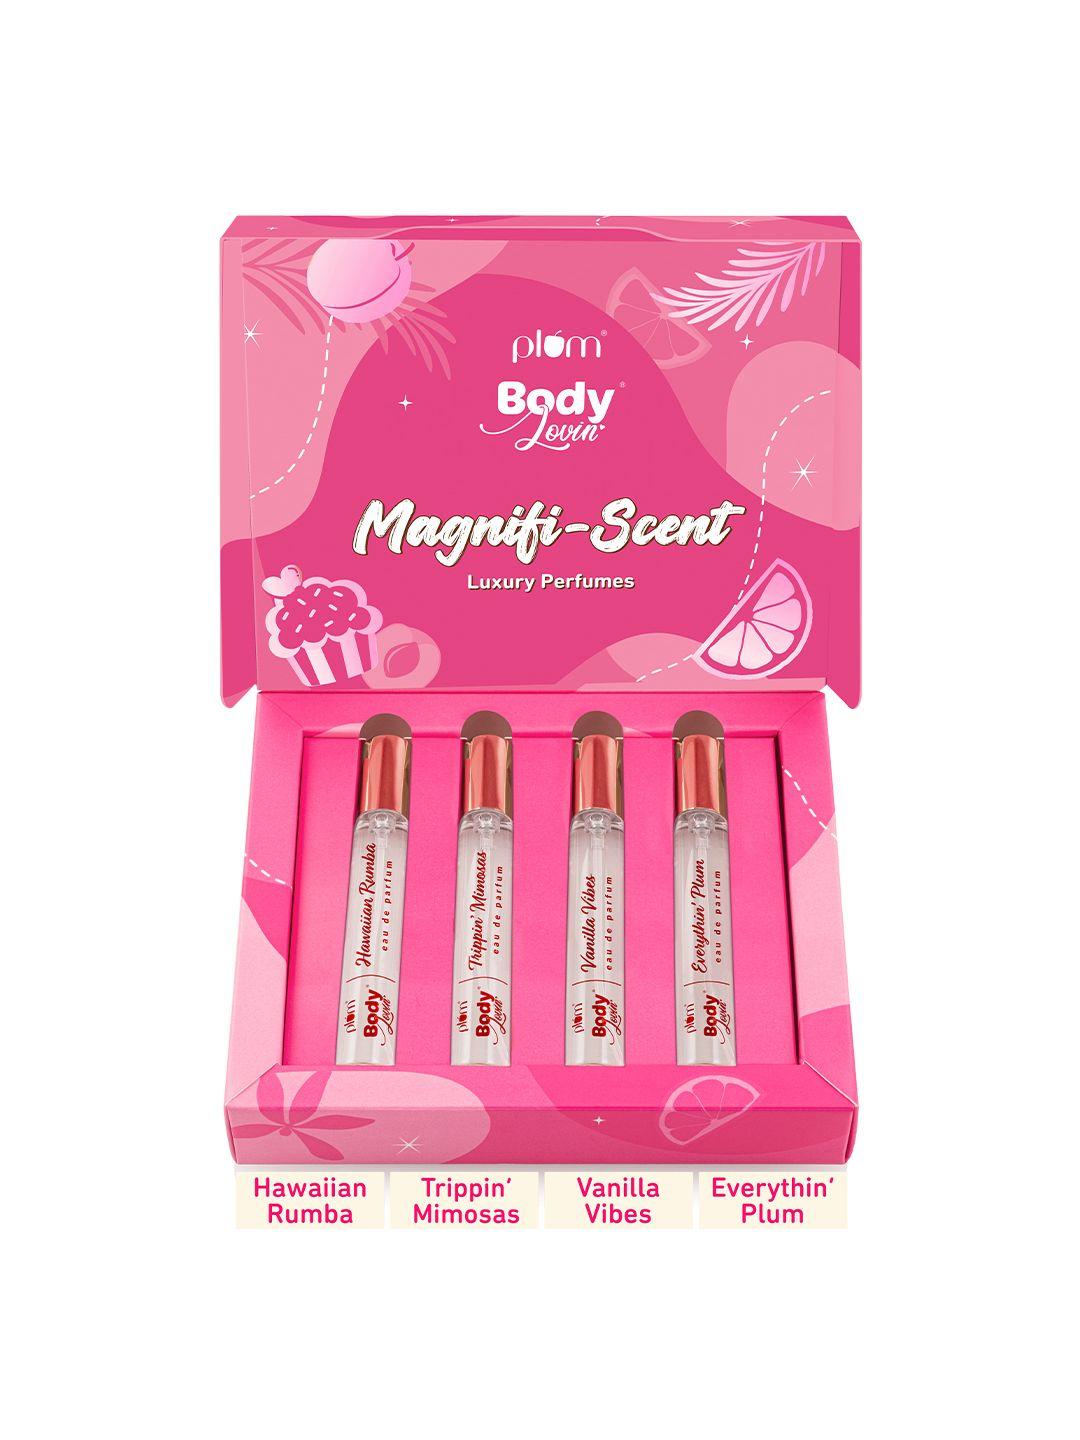 plum bodylovin' magnifi-scent 4 pieces eau de parfum gift set - 15ml each